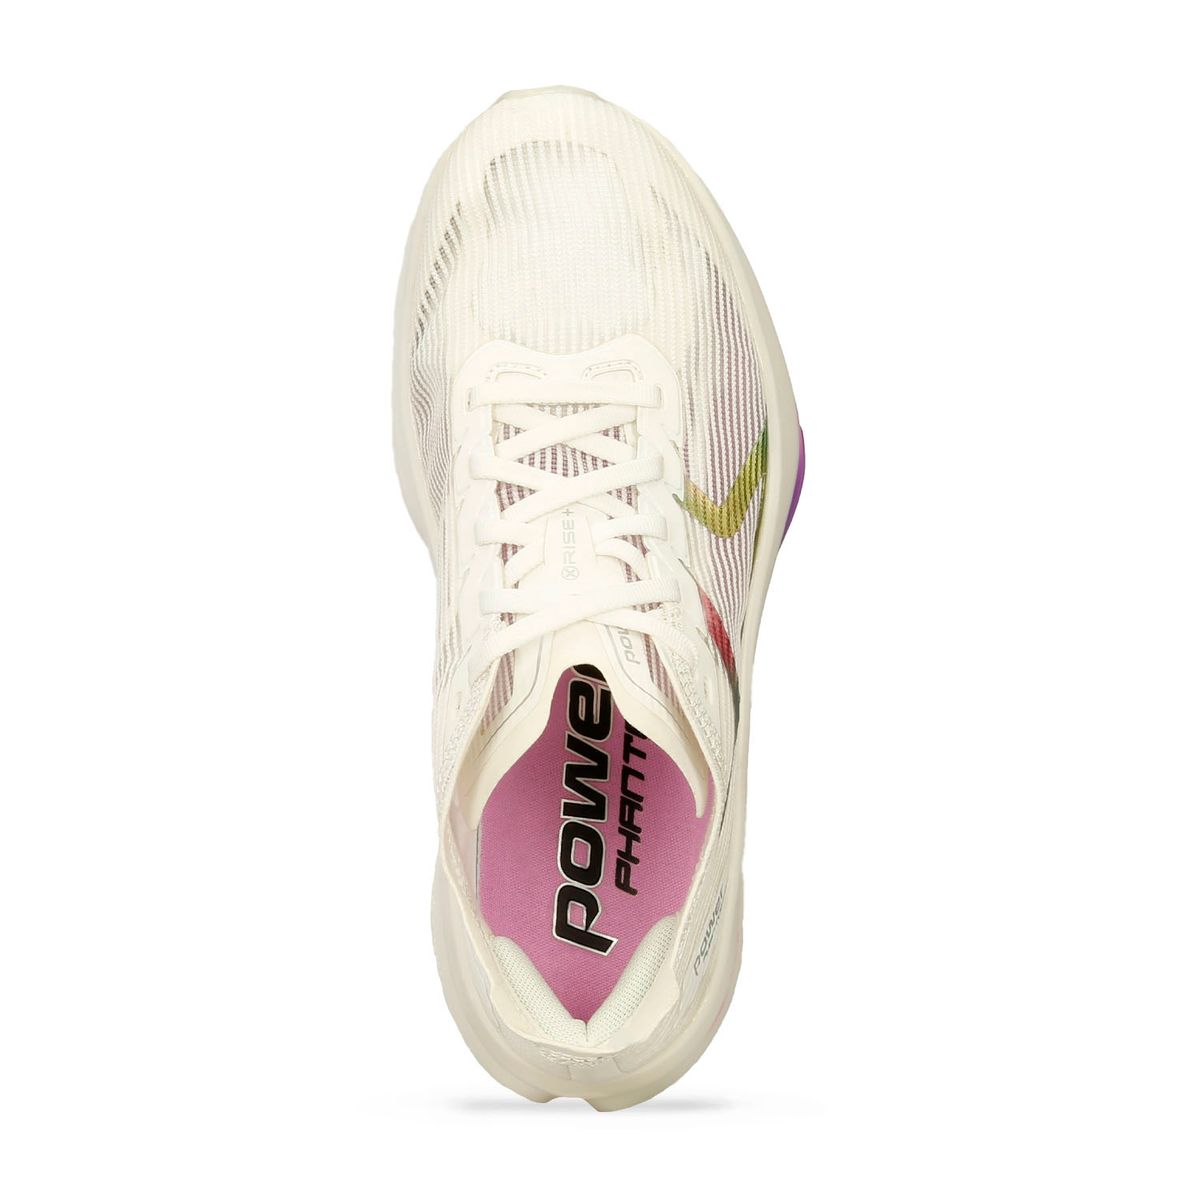 Tenis Deportivos Blanco-Purpura Power Xorise+ 700 Phantom Pro Mujer